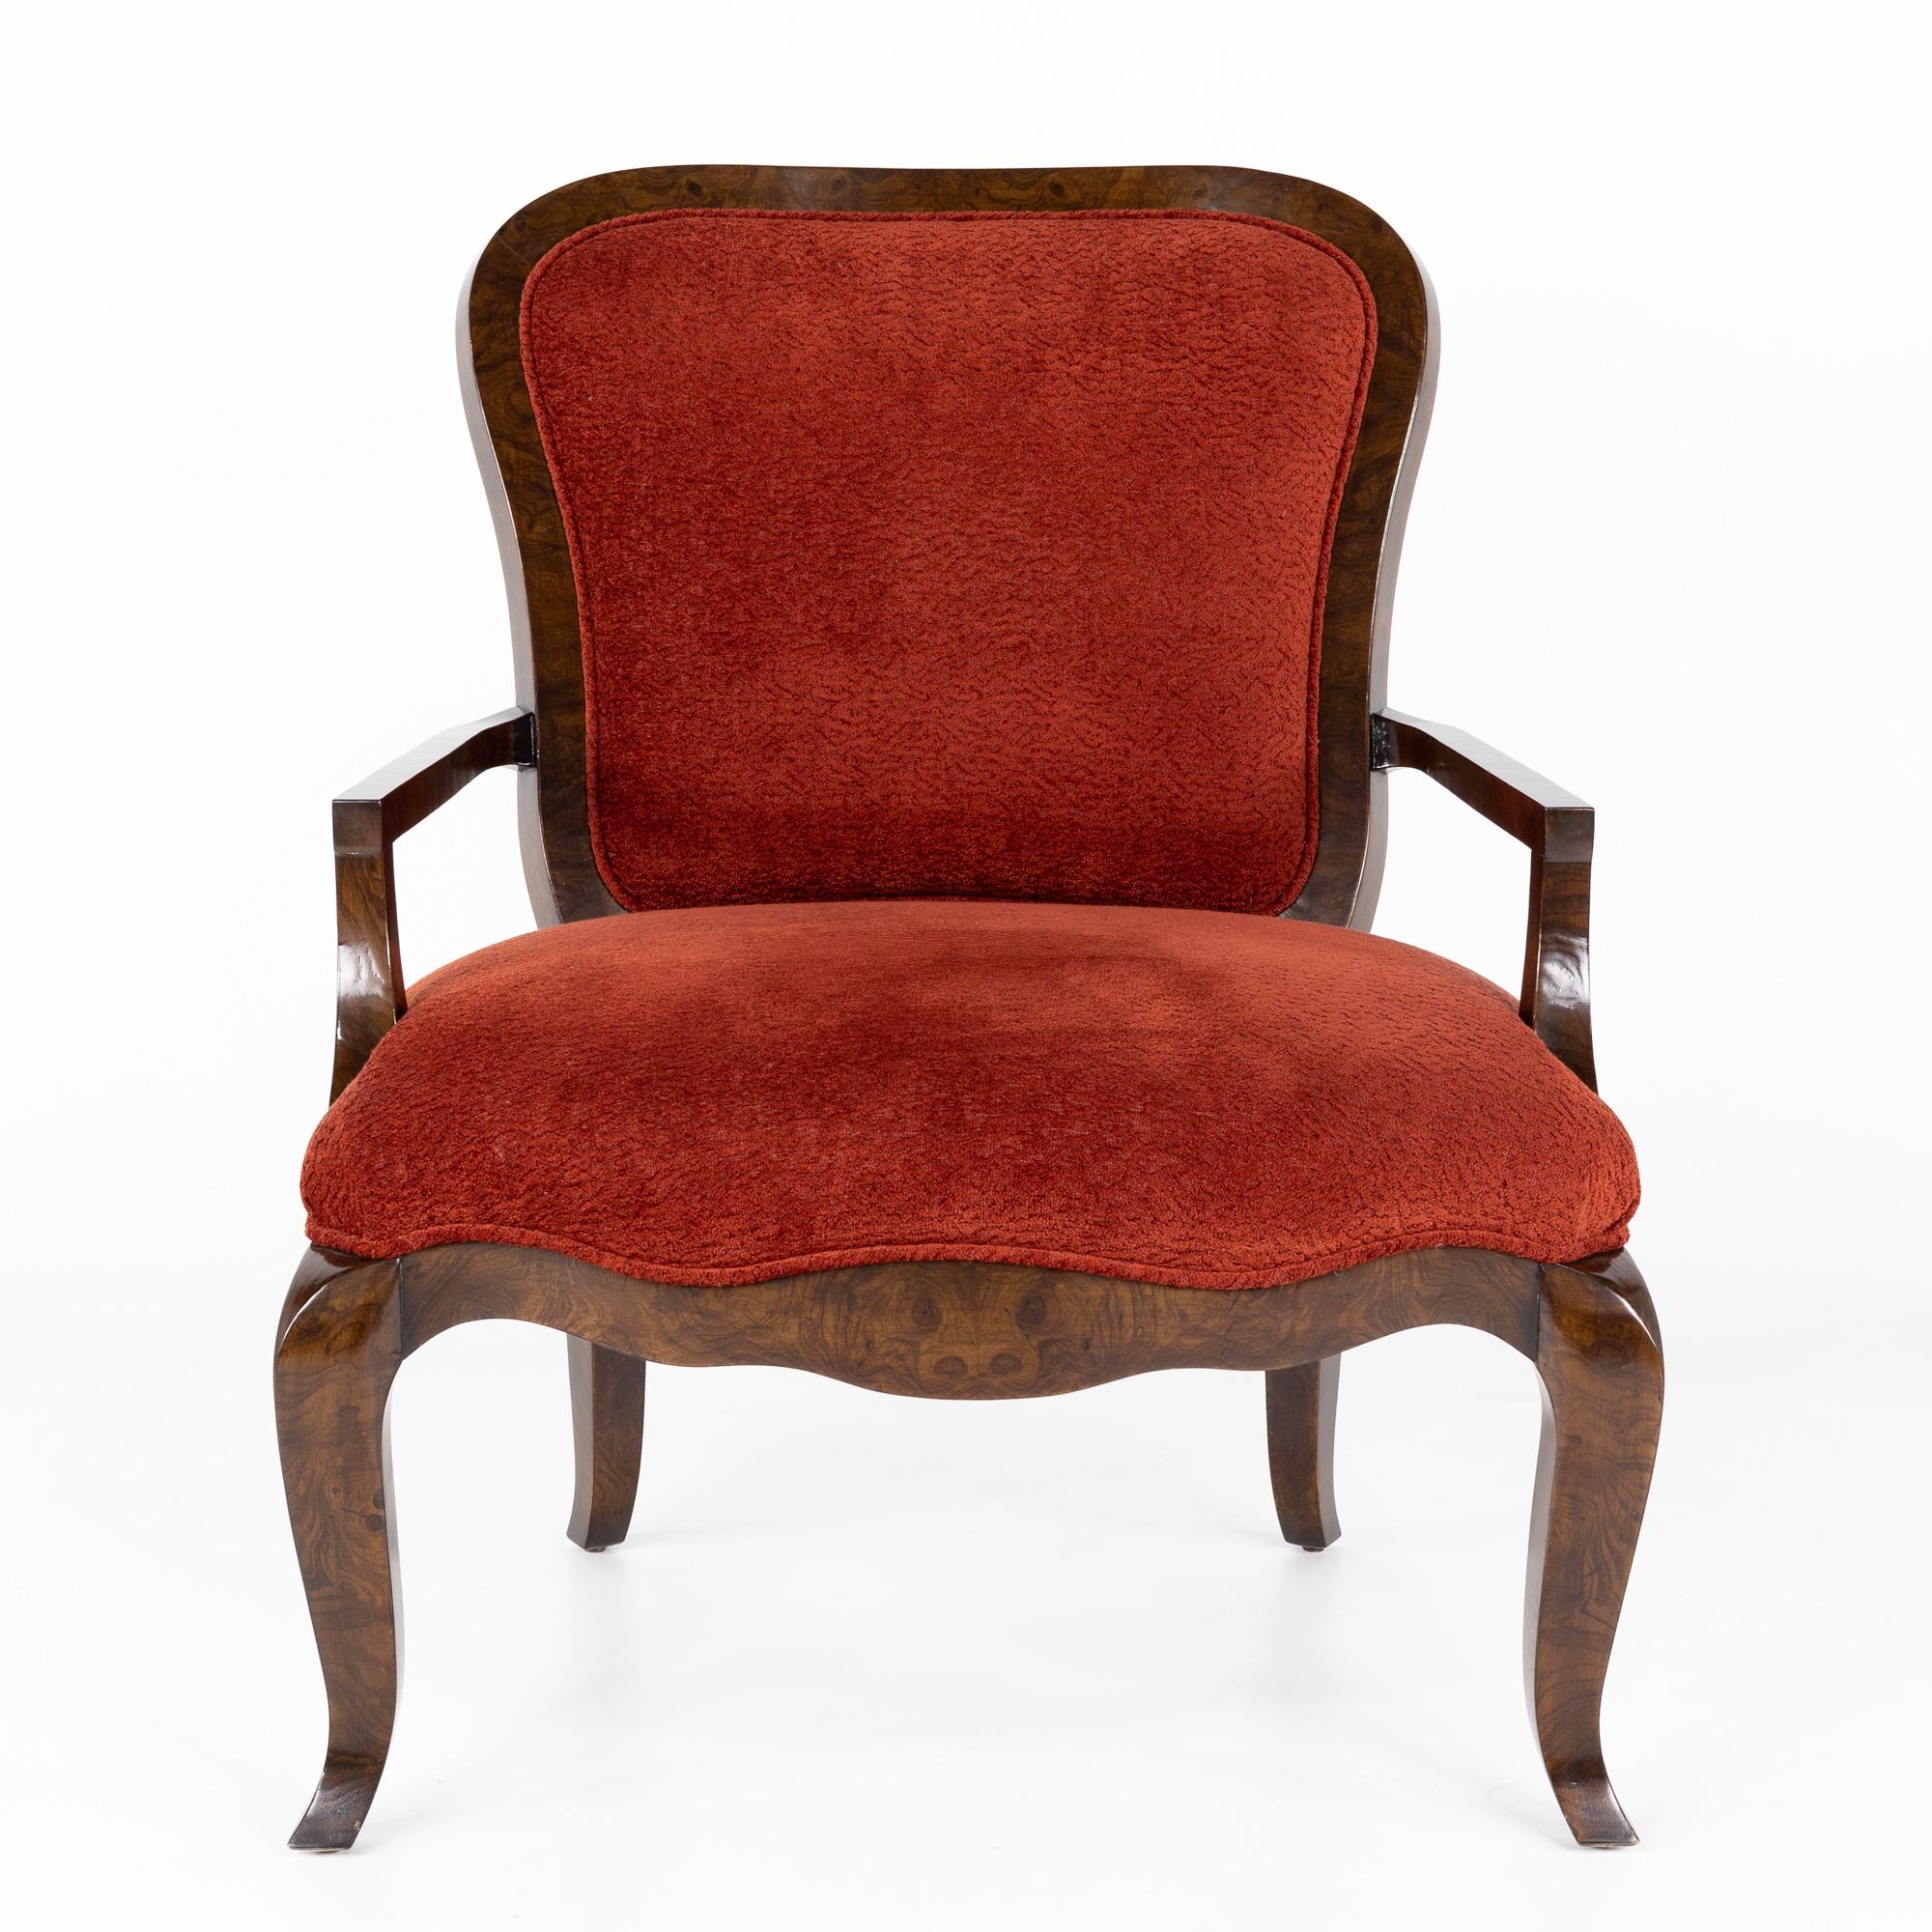 Lucien Rollin pour William Switzer fauteuil rouge tapissé et en bois de ronce

Cette chaise mesure : 32 large x 34 profond x 41 pouces de haut, avec une hauteur d'assise de 20,5 et une hauteur d'accoudoir de 25 pouces.

Cette pièce est en